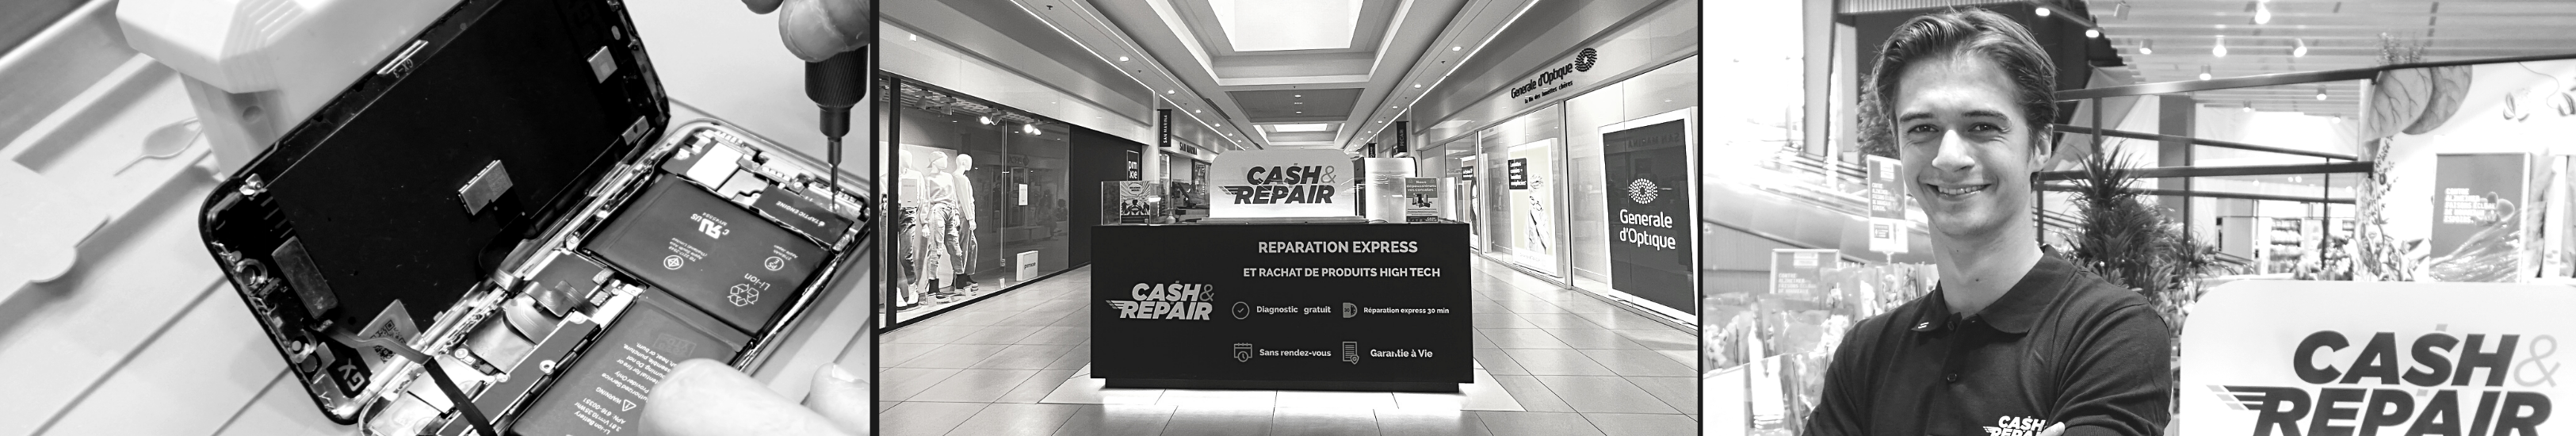 - Atelier de réparation Cash and Repair Marly